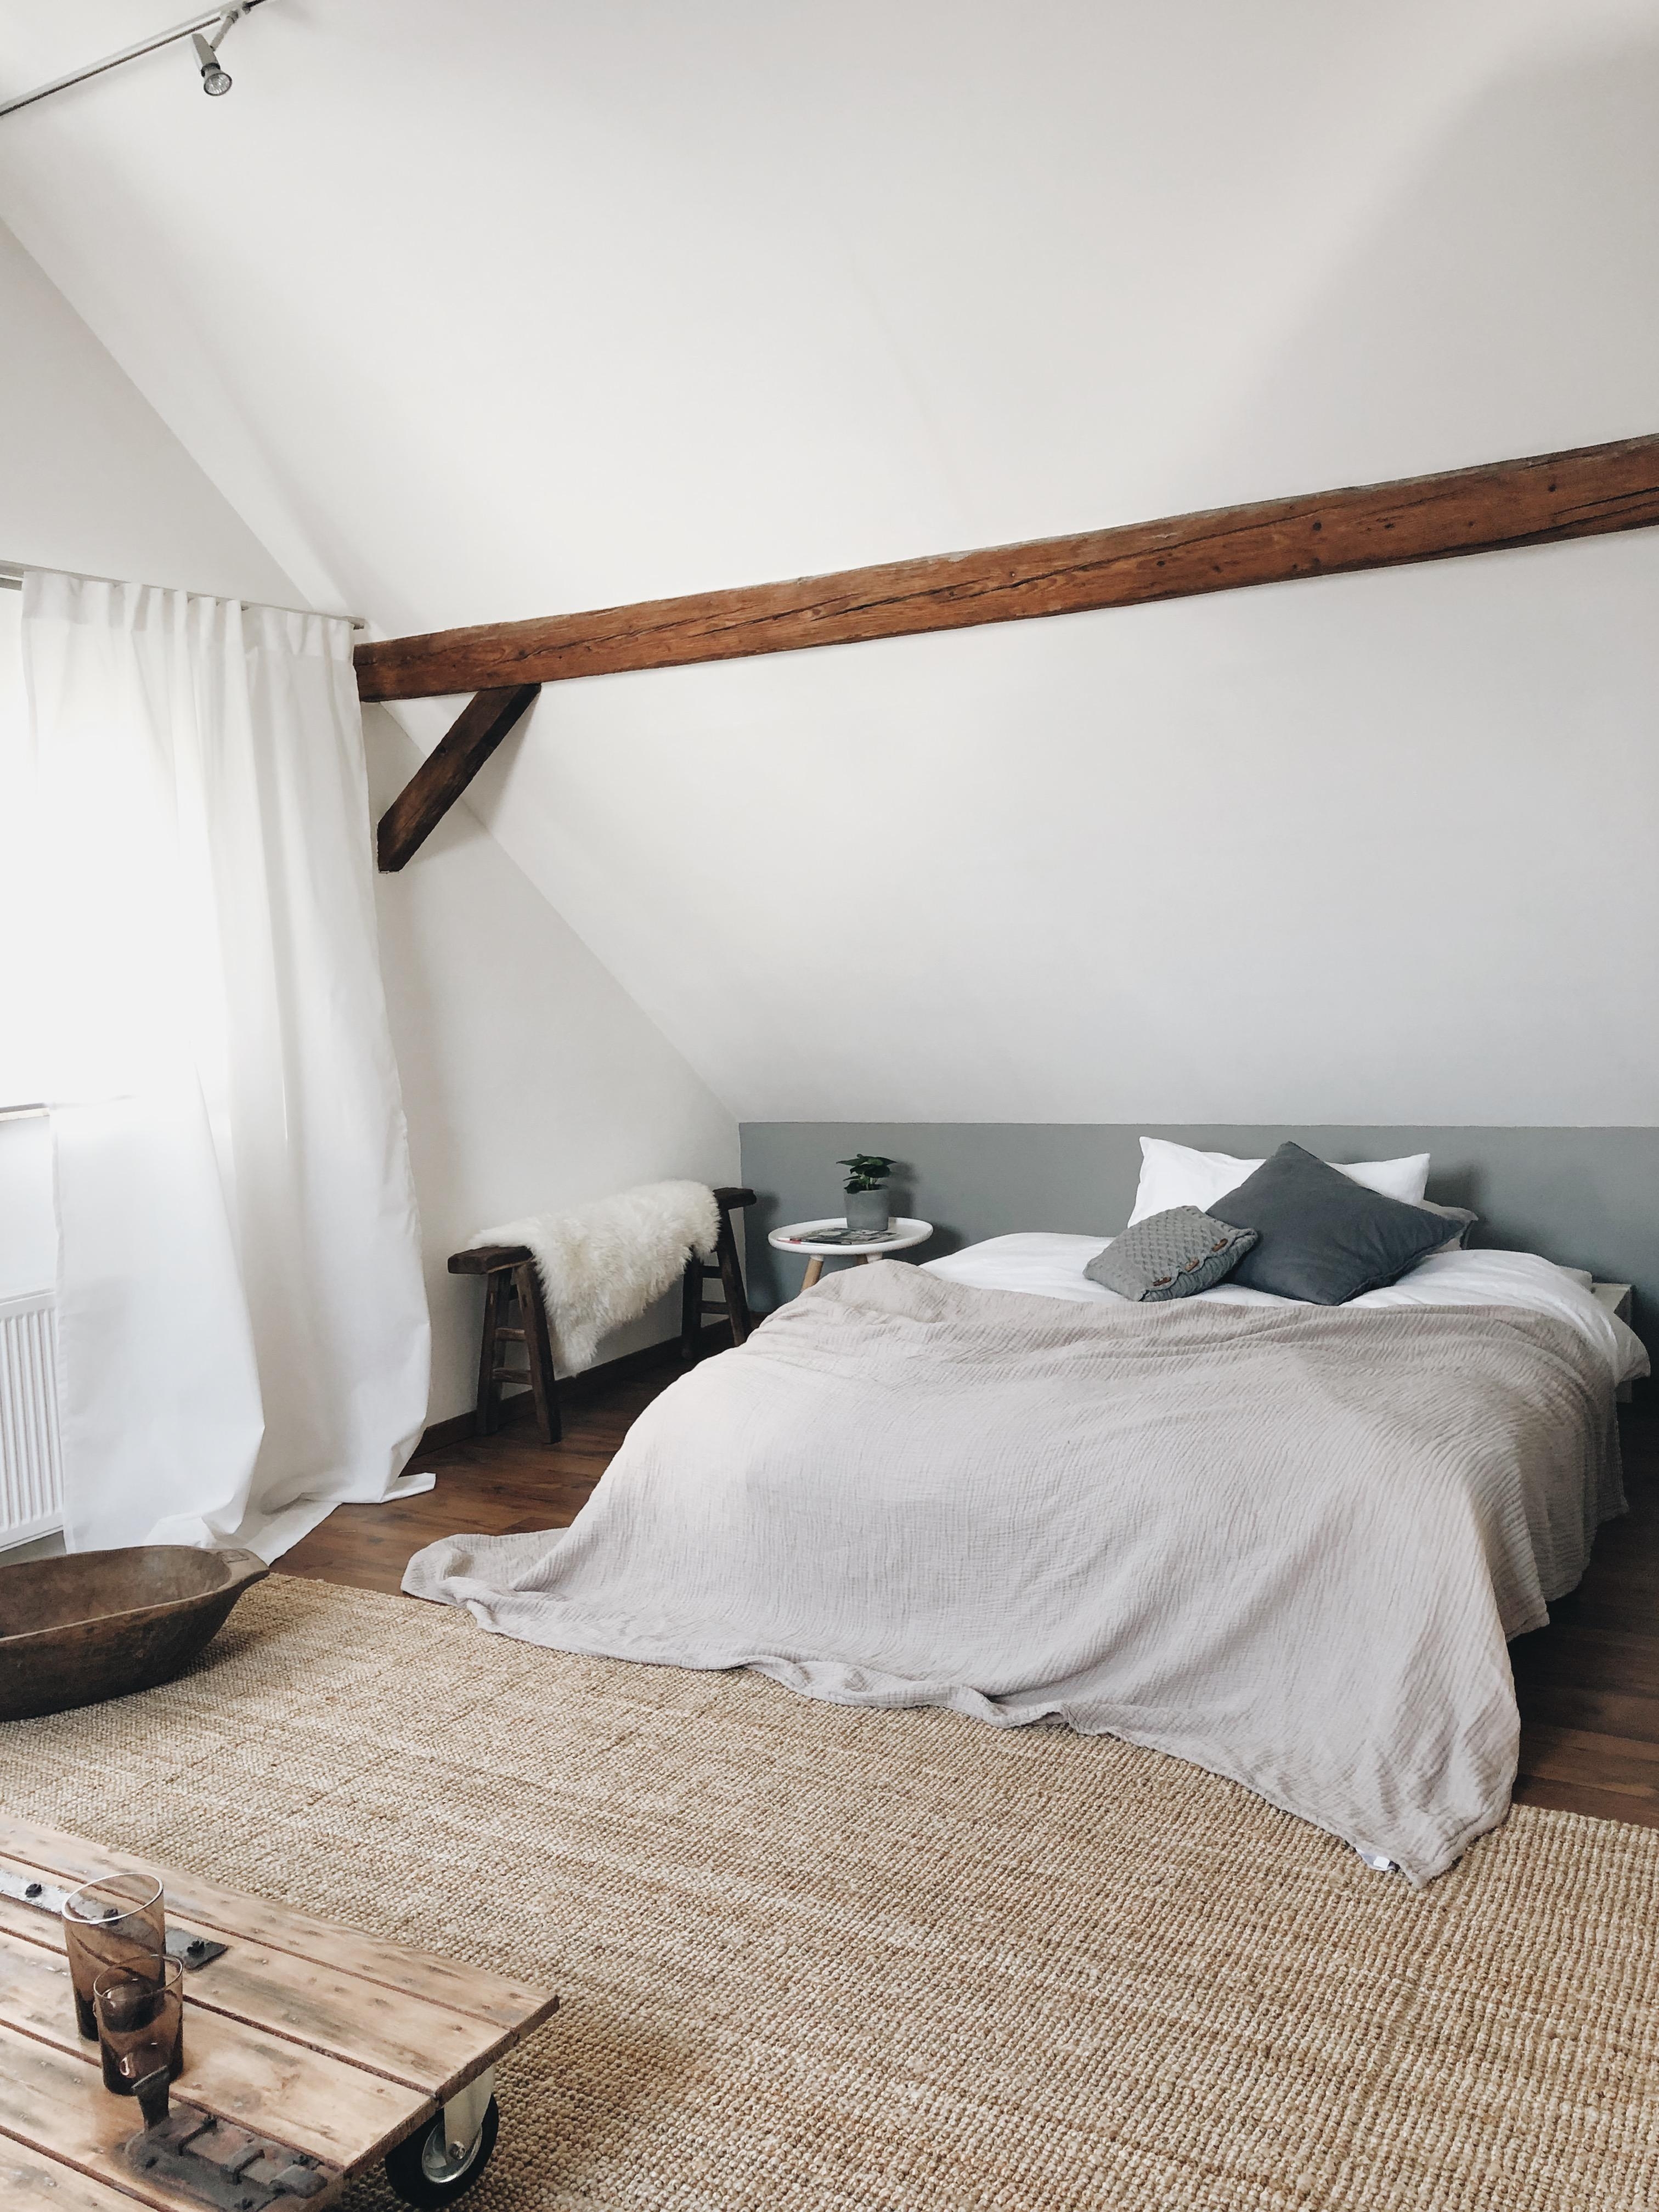 #schlafzimmer #bedroom #dachschräge #dachboden #gästezimmer